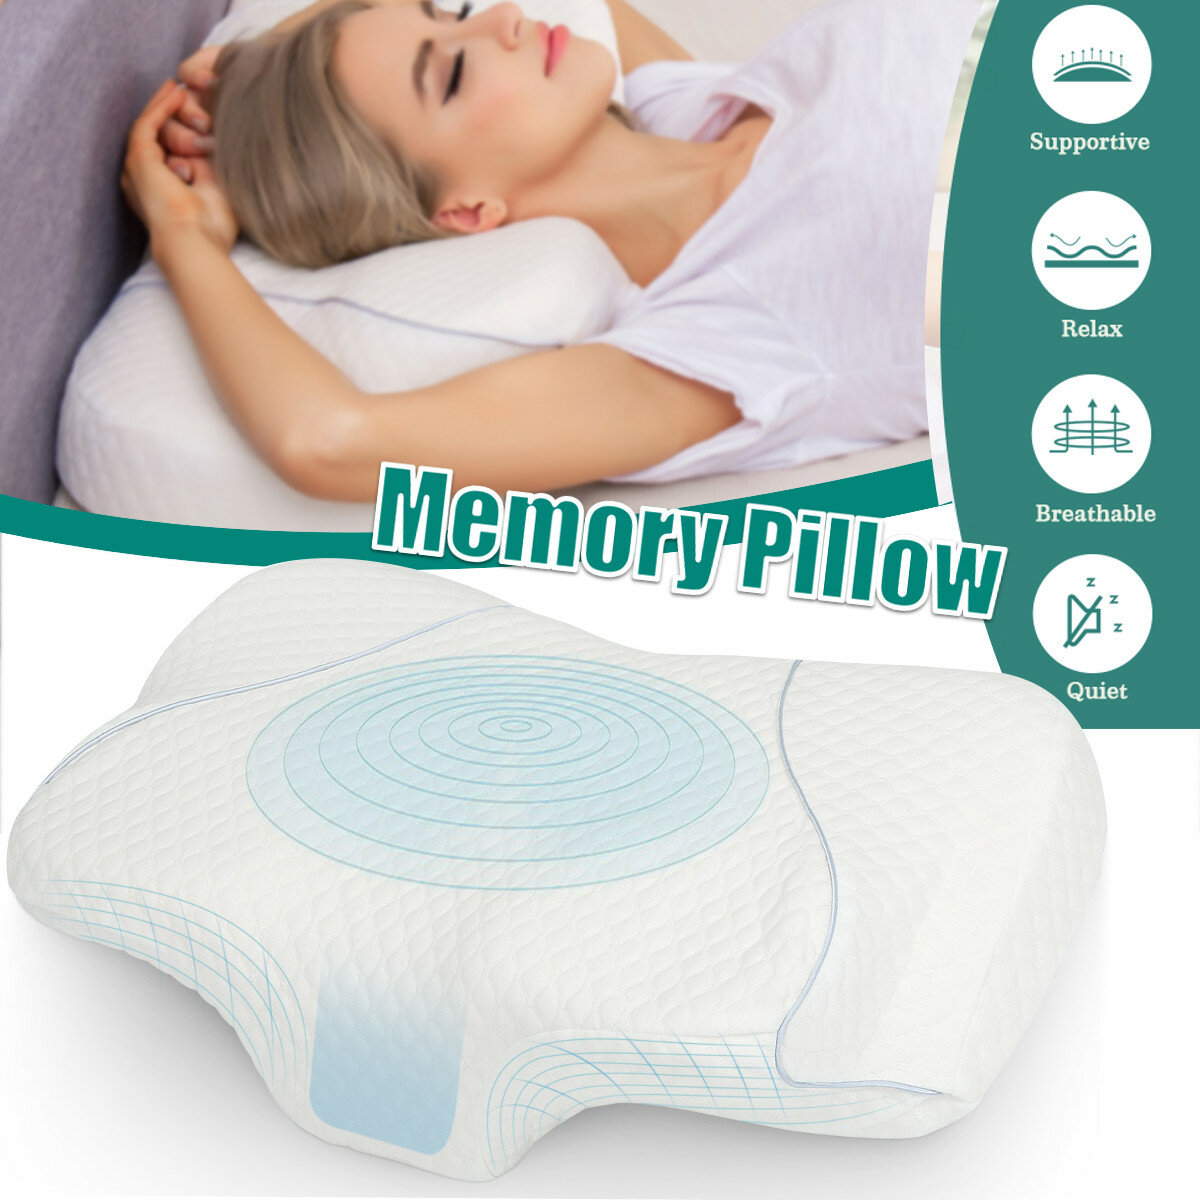 ESSORT Cervical Memory Pillow Foam Contour Pillow Neck Pain Ergonomic Breathable Sleeping Adjustable